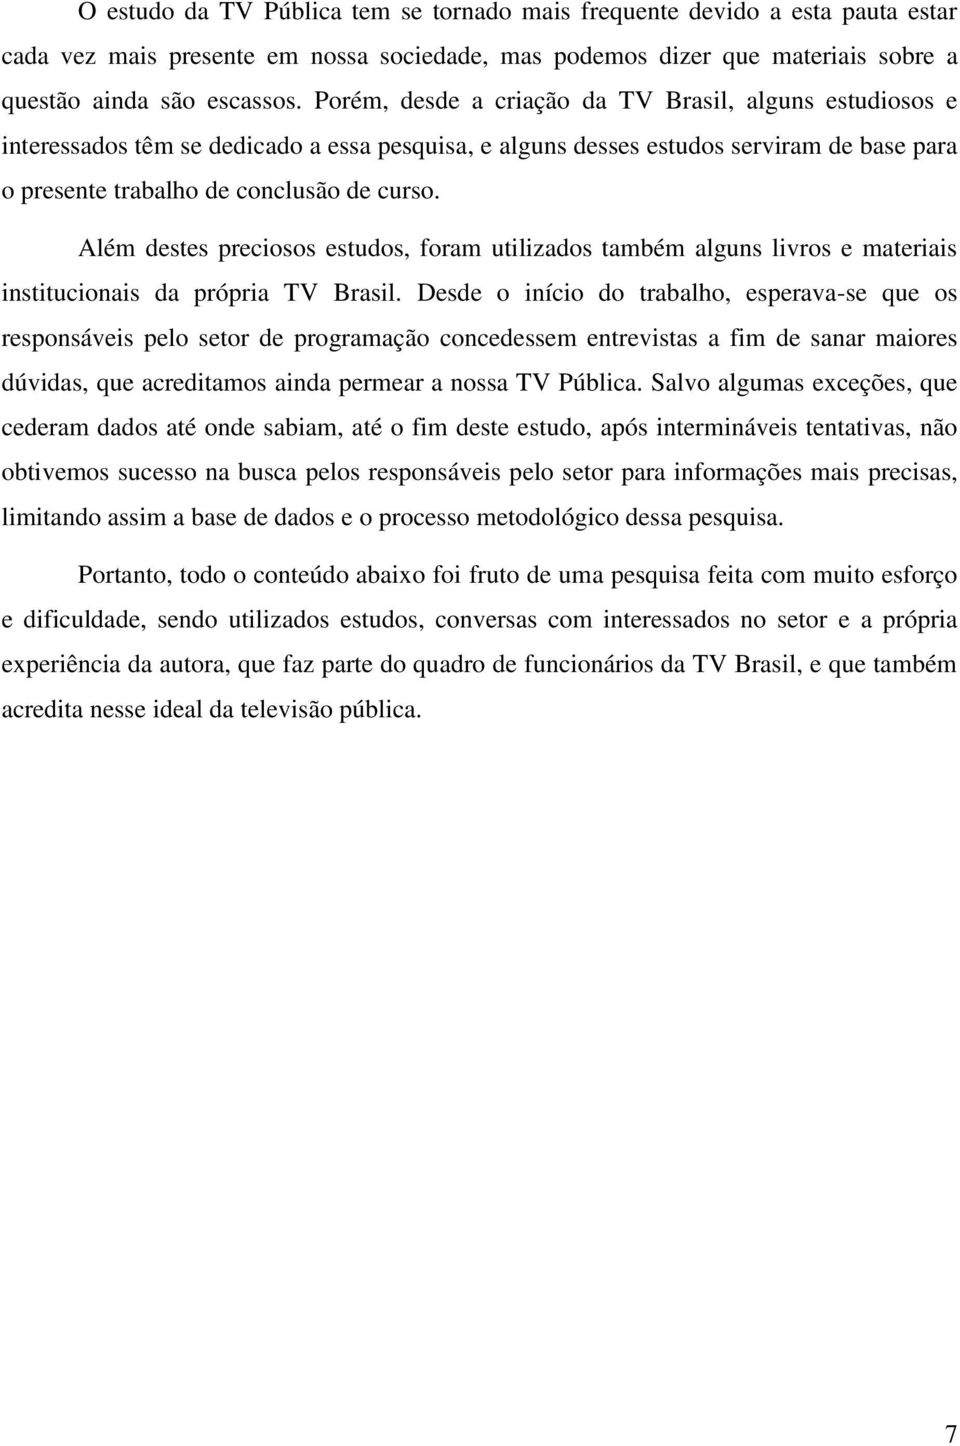 Além destes preciosos estudos, foram utilizados também alguns livros e materiais institucionais da própria TV Brasil.